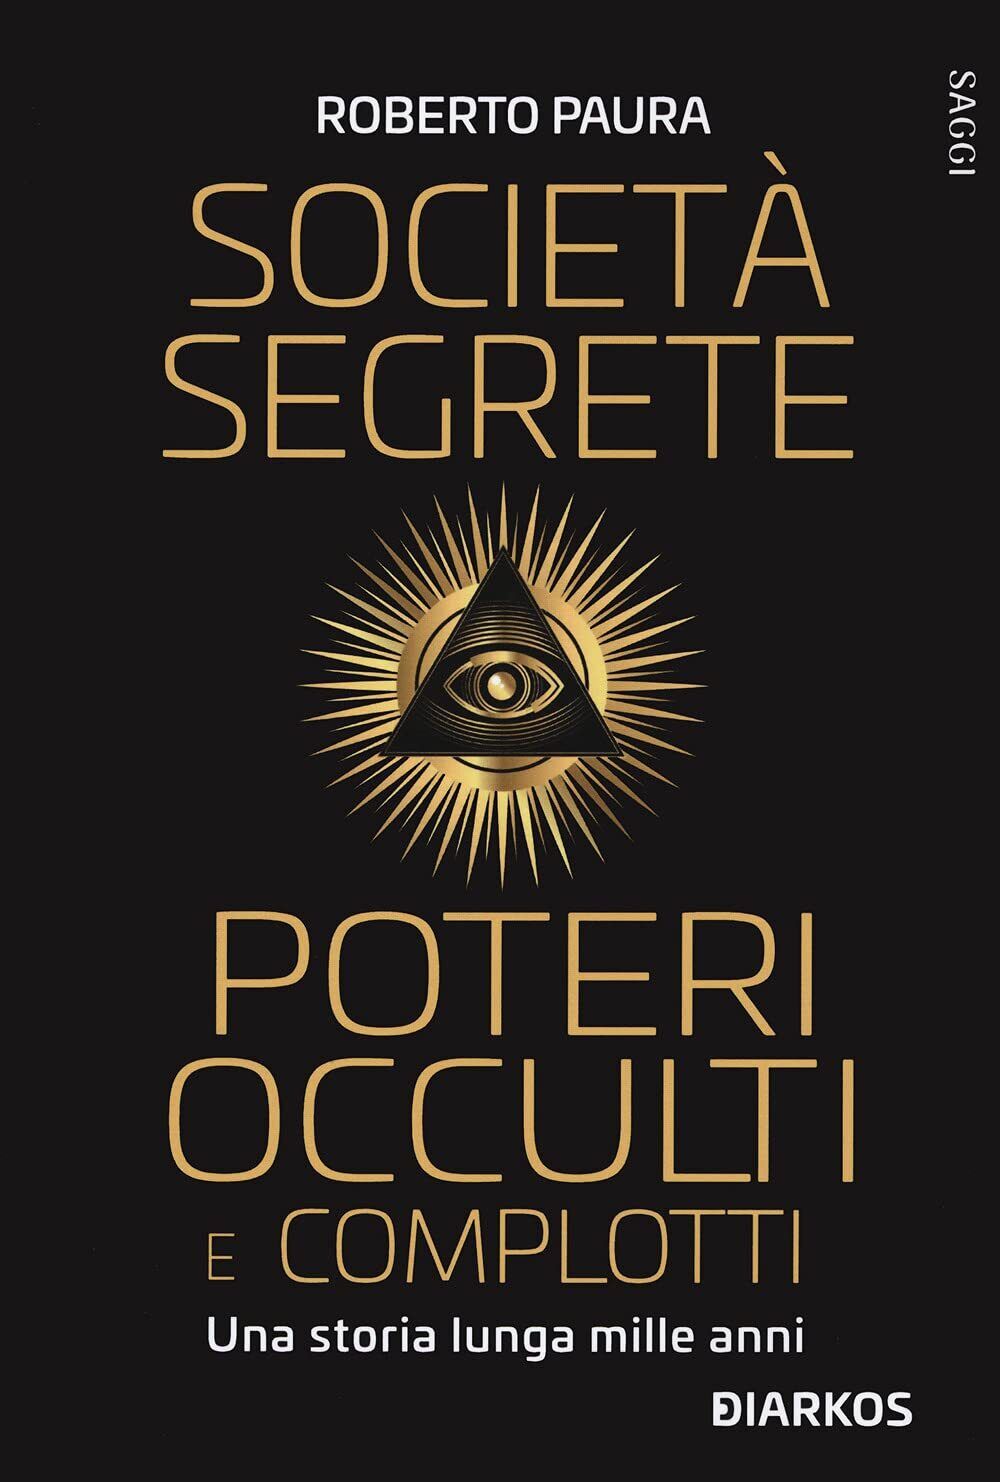 Societ? segrete, poteri occulti e complotti - Roberto Paura - DIARKOS, 2021